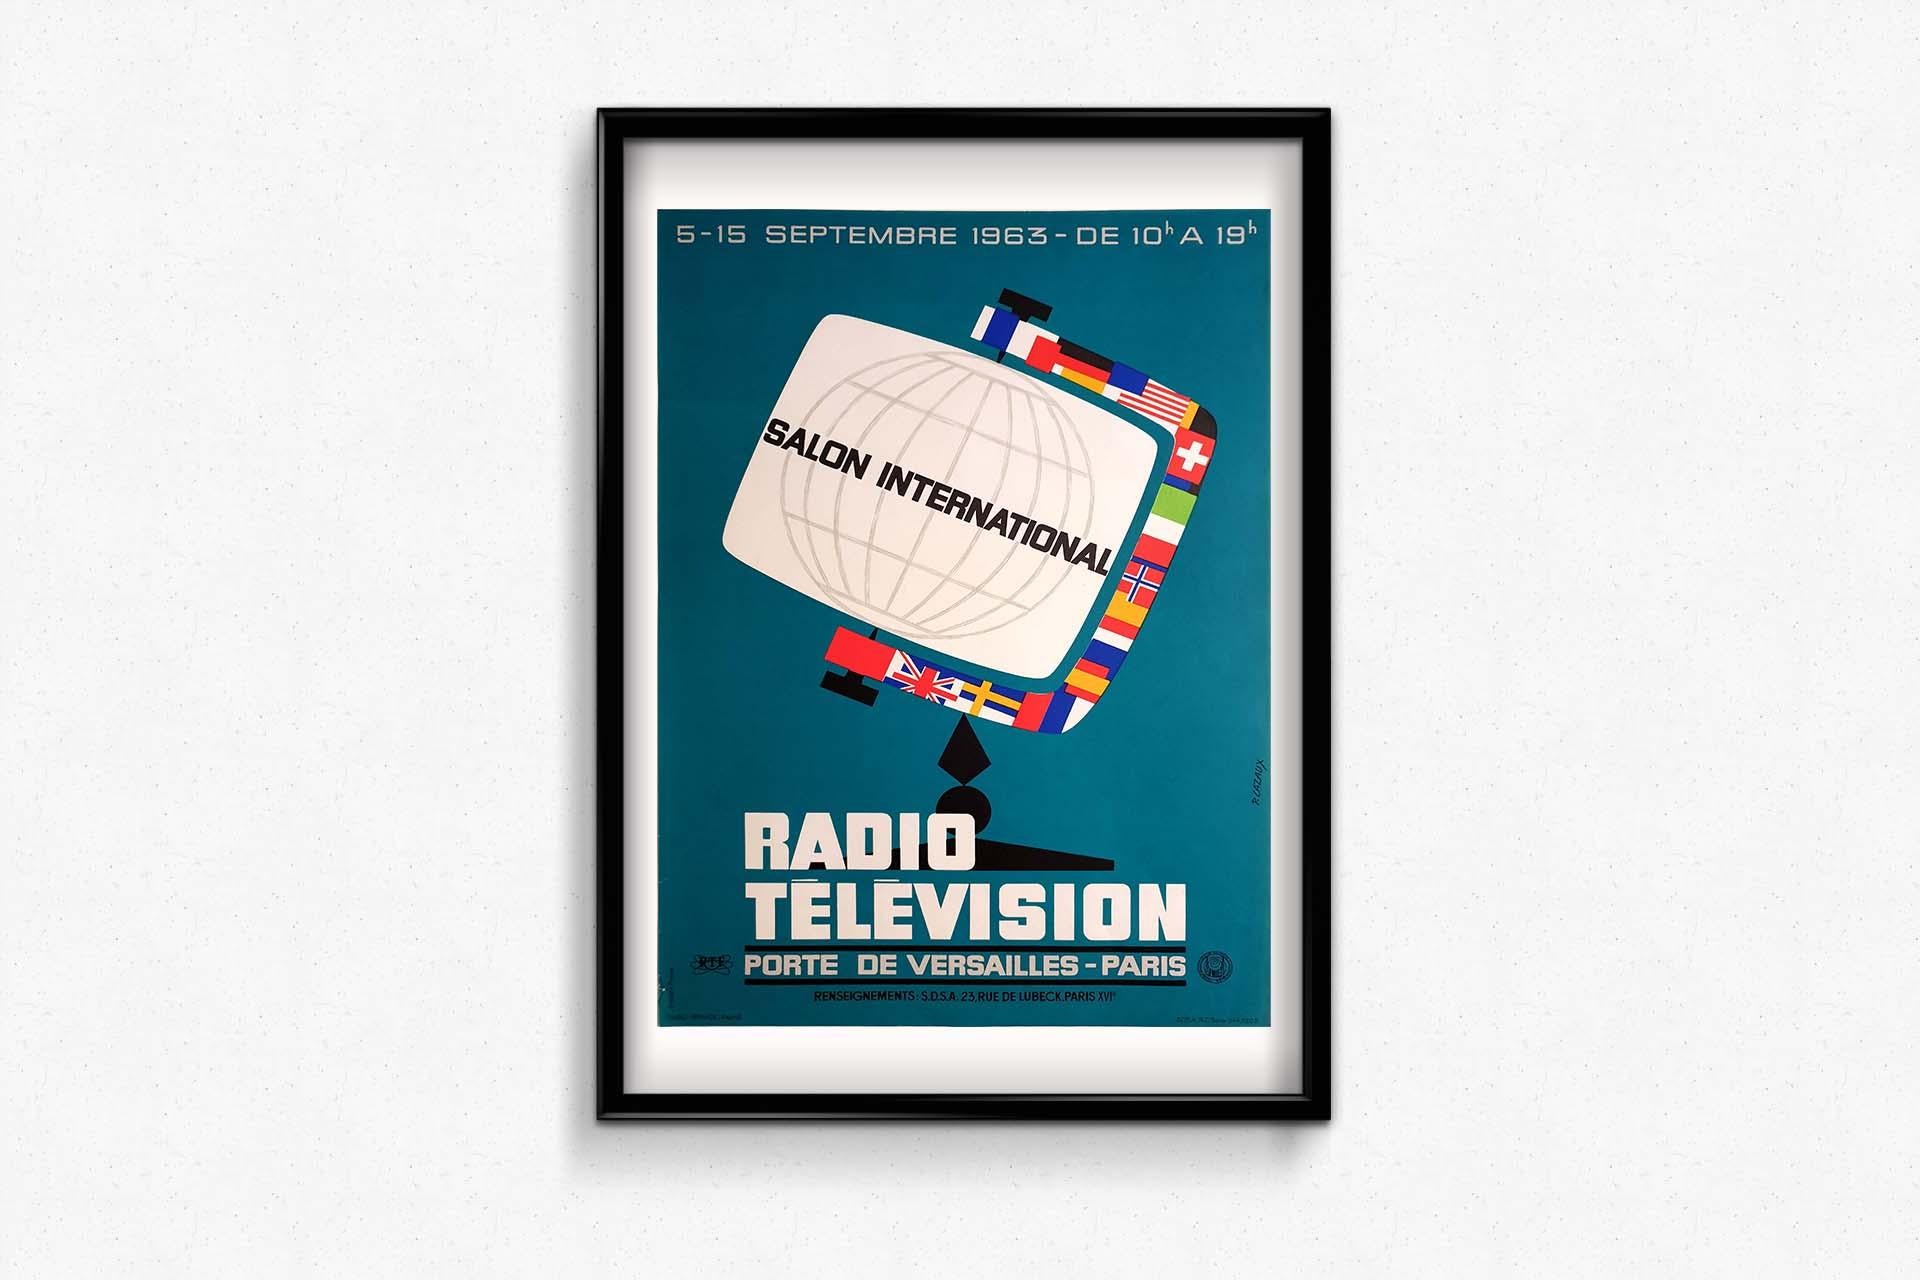 P. Cazaux's 1963 original poster for the Salon International Radio Télévision For Sale 1